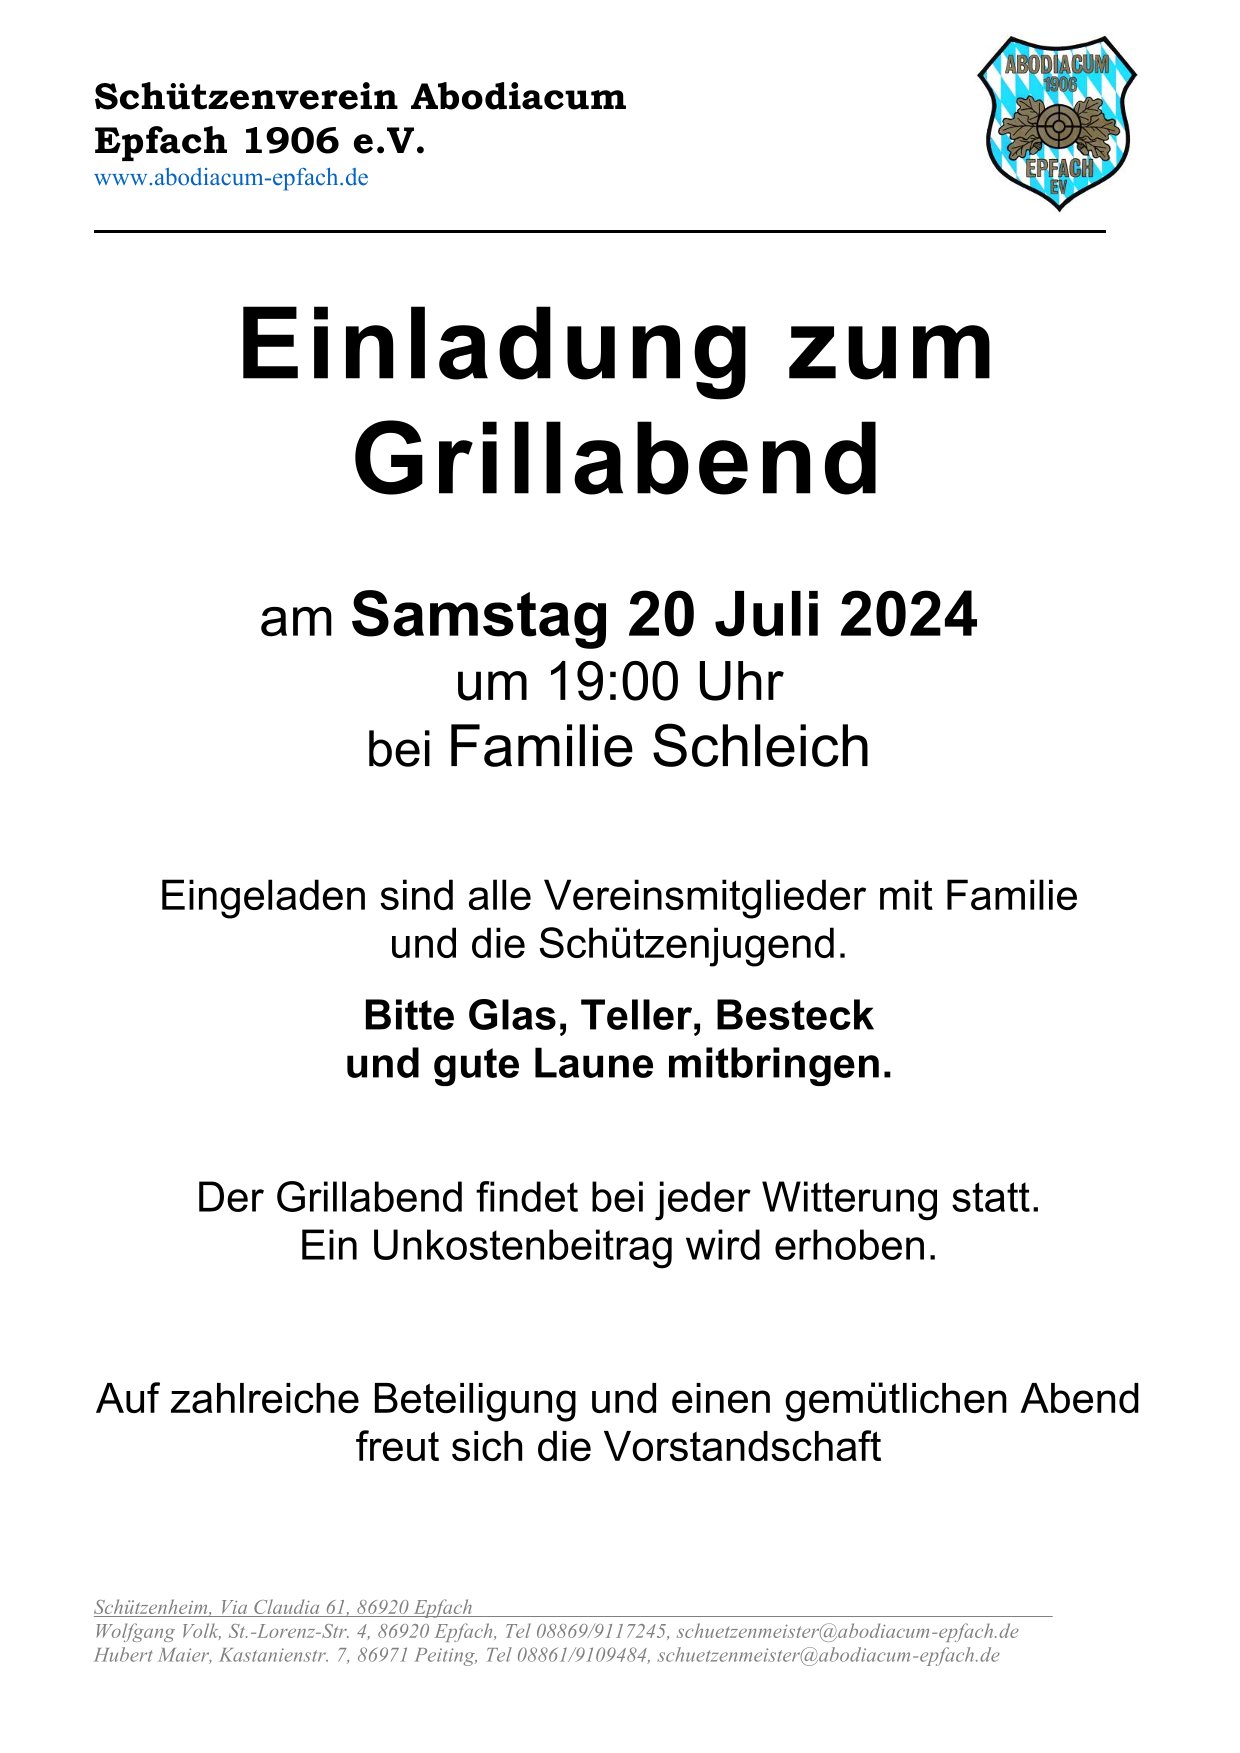 Einladung_zum_Grillabend-2024.jpg